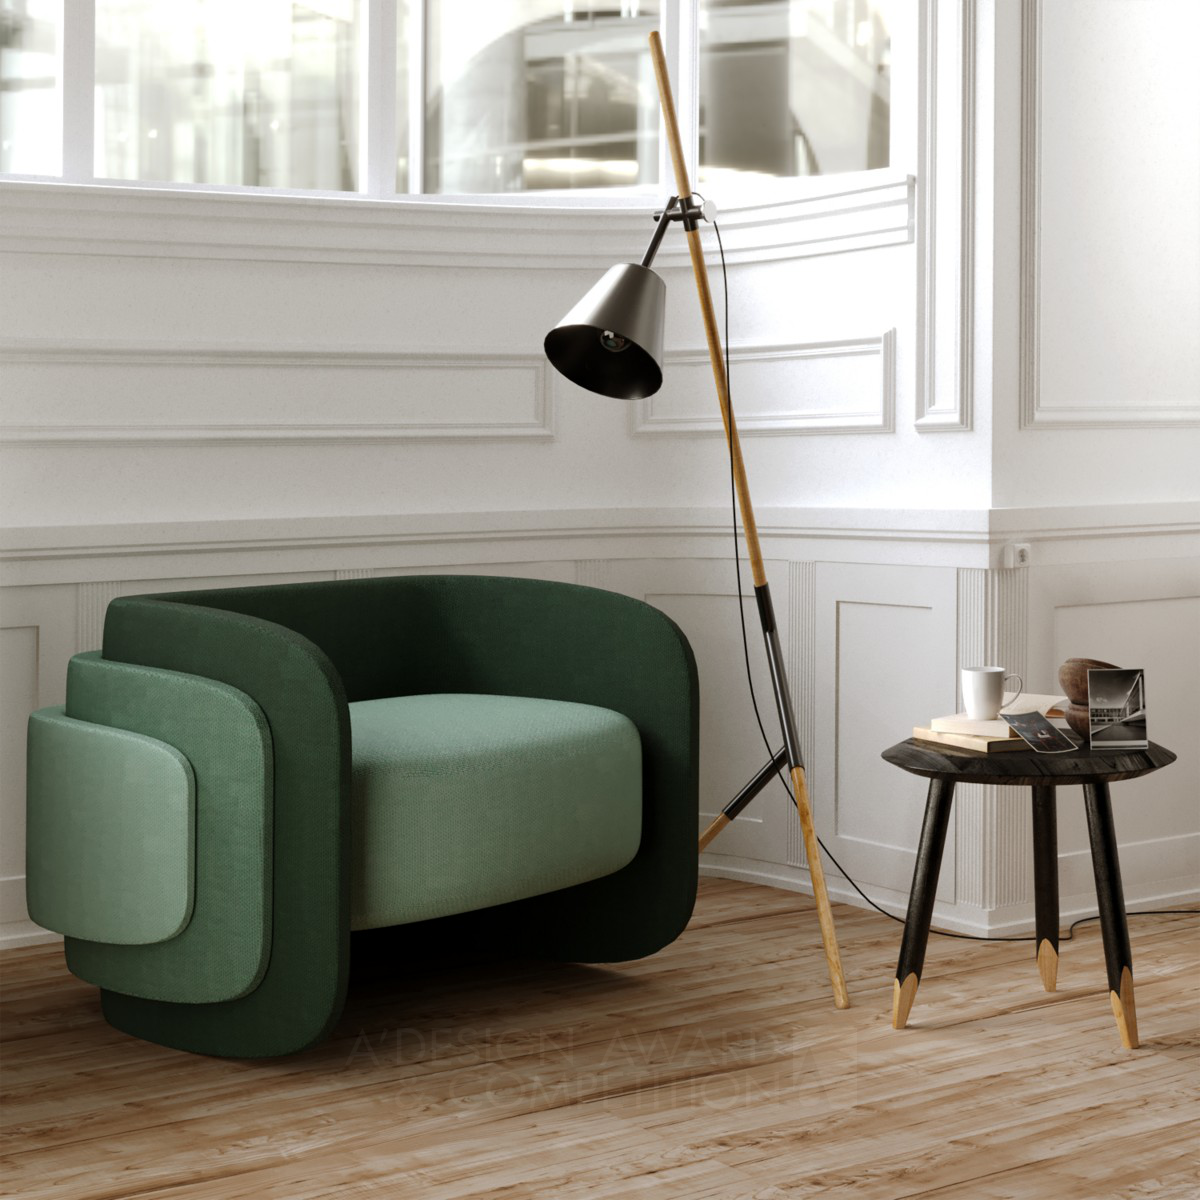 Minimalist Sofa Design: Simplo